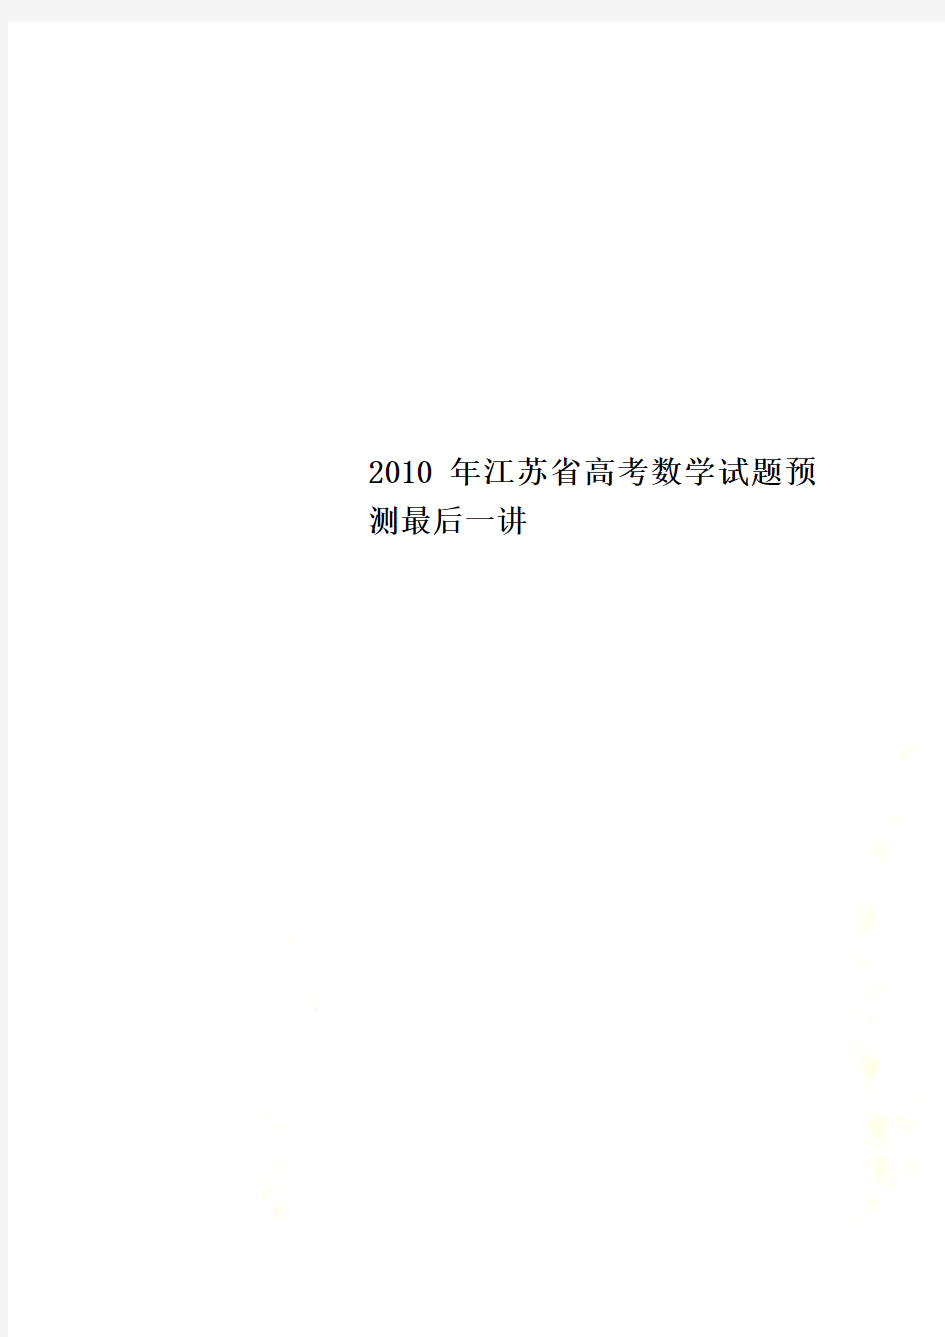 2010年江苏省高考数学试题预测最后一讲